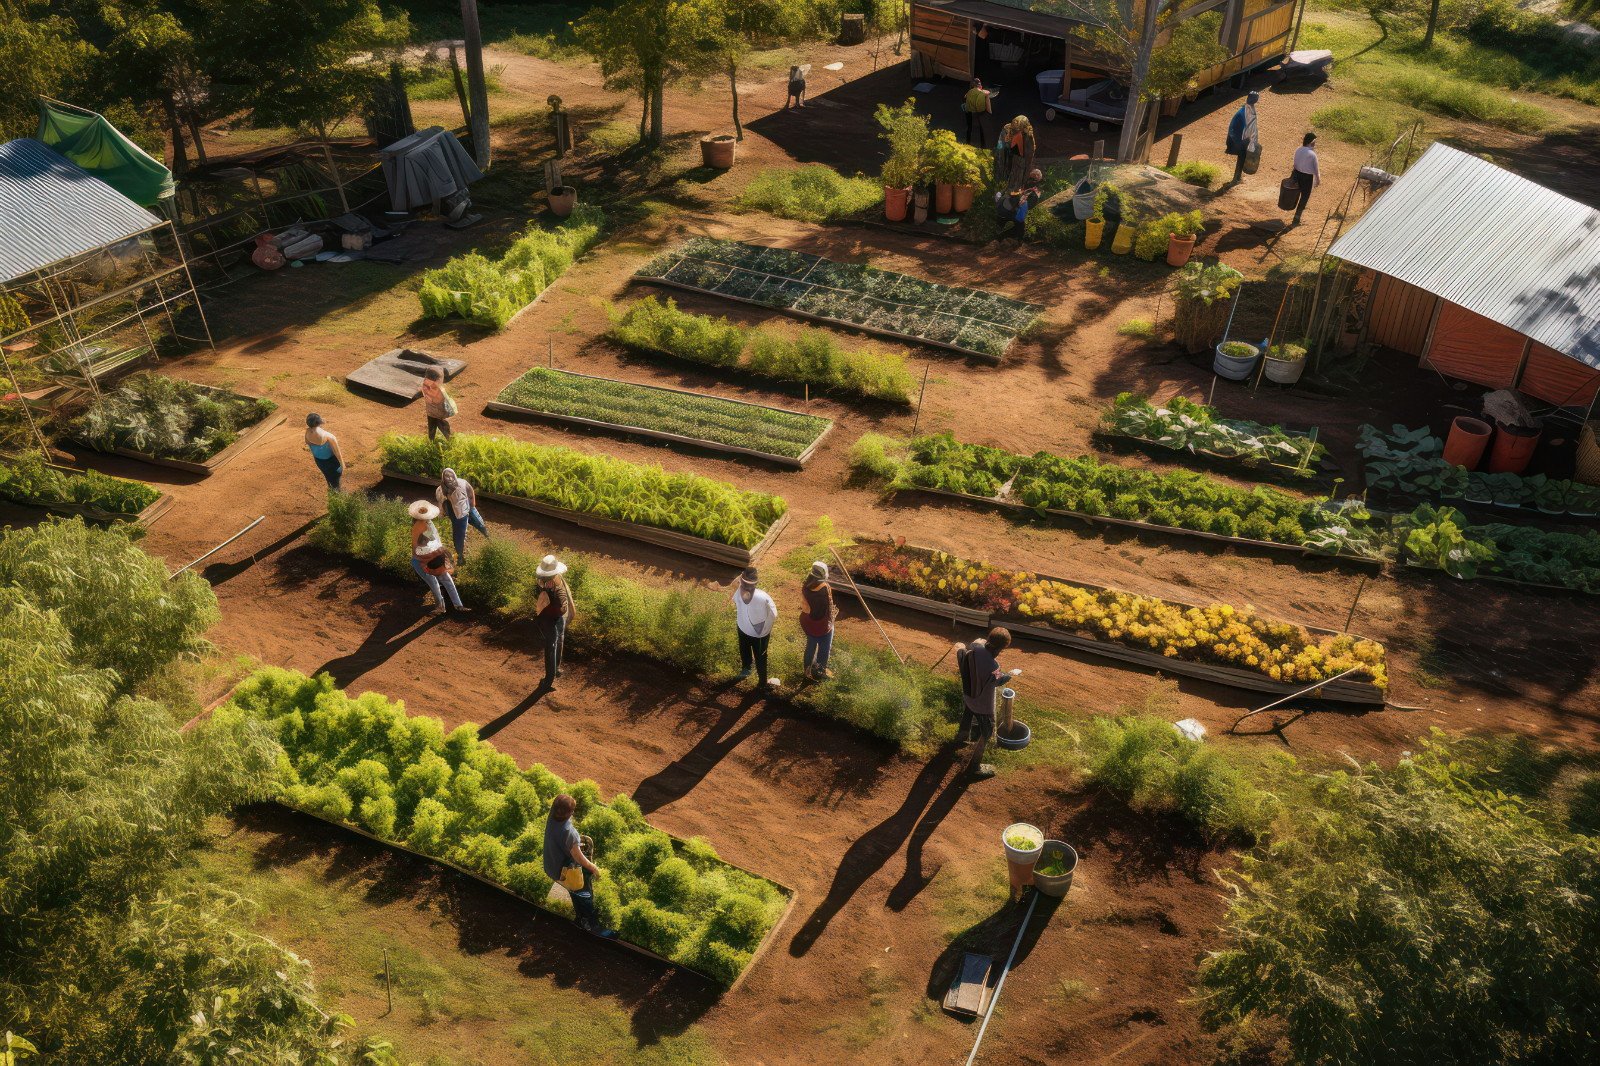 Les jardins partagés, une convivialité assurée ! ©olga_demina, Adobe Stock